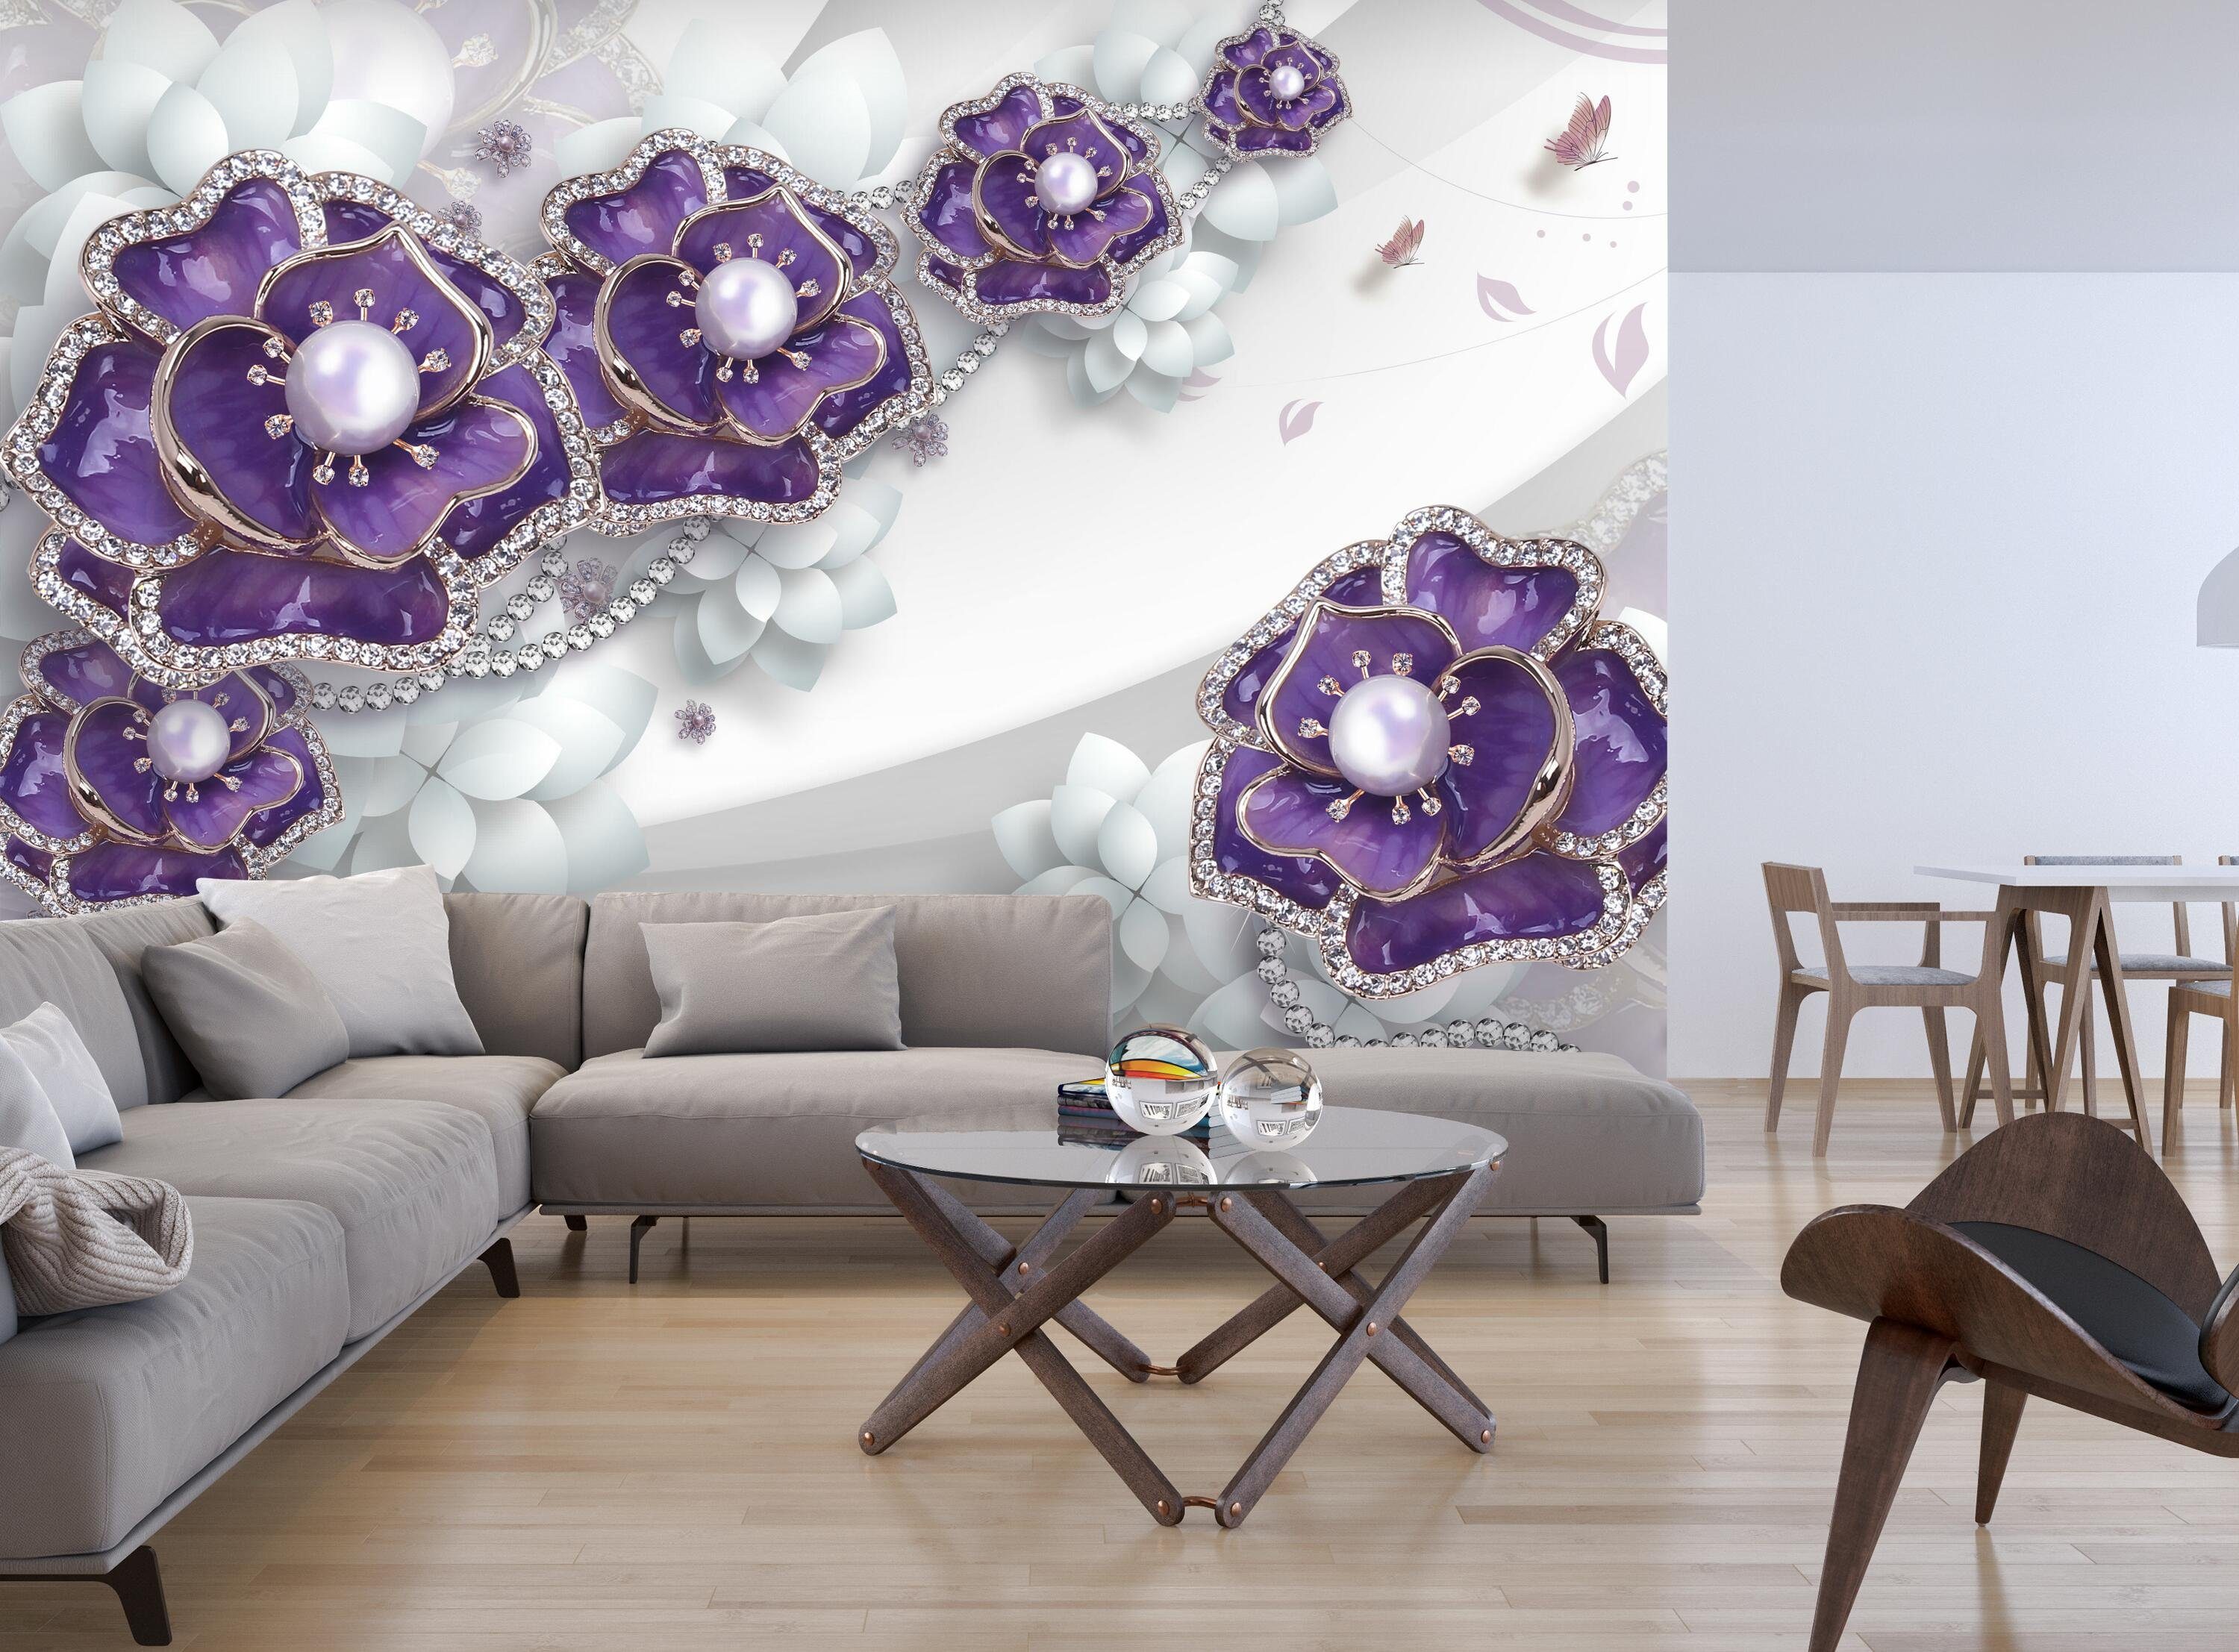 Fototapete glatt, Vliestapete wandmotiv24 Wandtapete, weiß, 3D matt, Motivtapete, violett Perlen Blumen